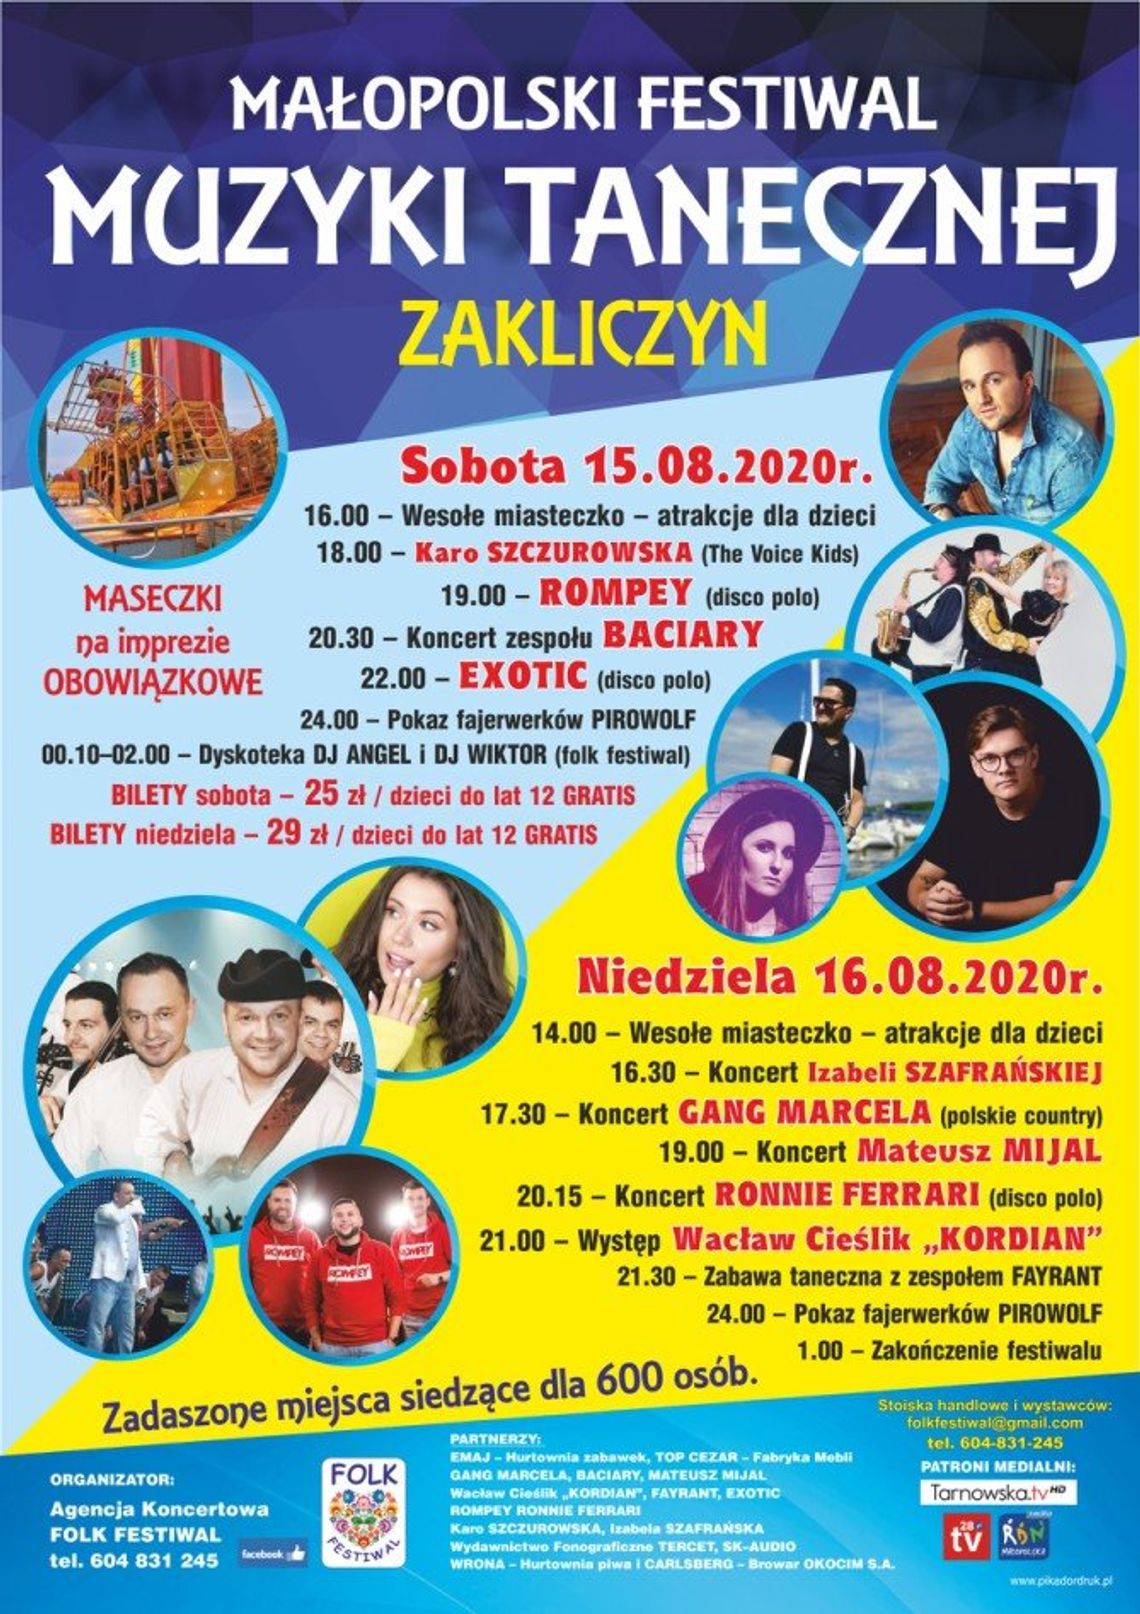 Zapraszamy na "Małopolski Festiwal Muzyki Tanecznej" w Zakliczynie